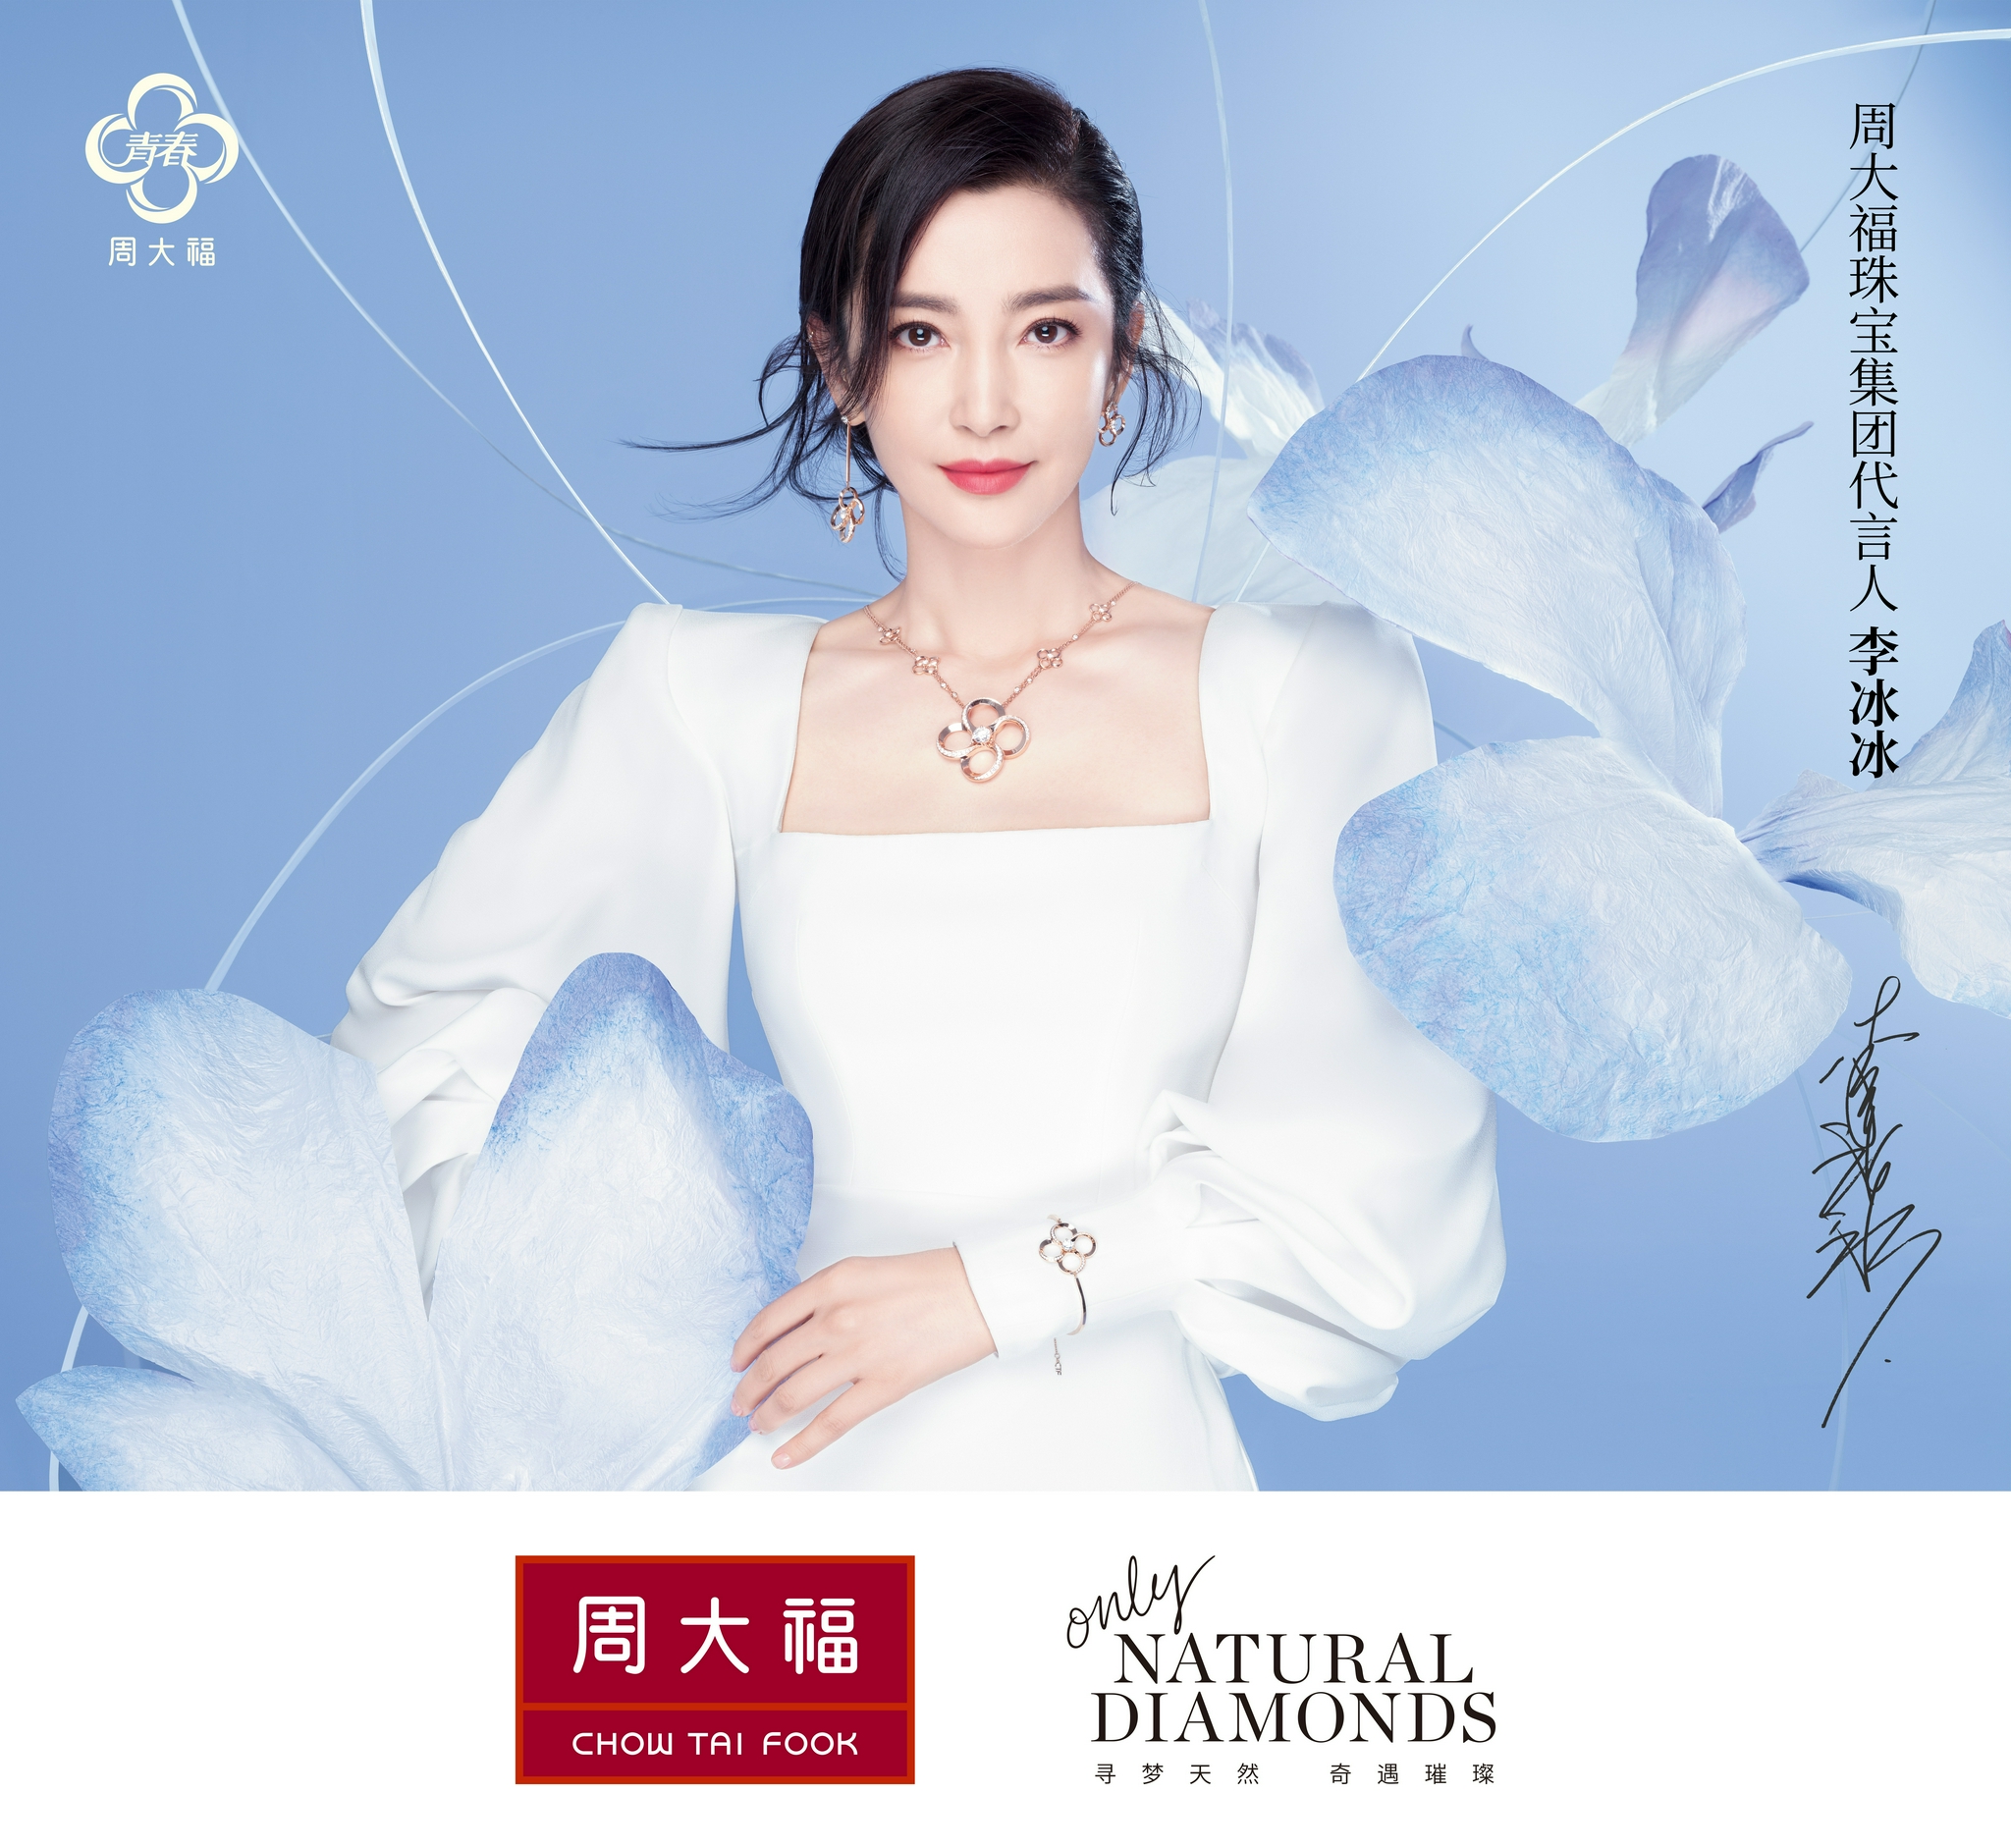 周大福珠宝集团代言人李冰冰出席青春88系列发布会,诠释永恒美丽